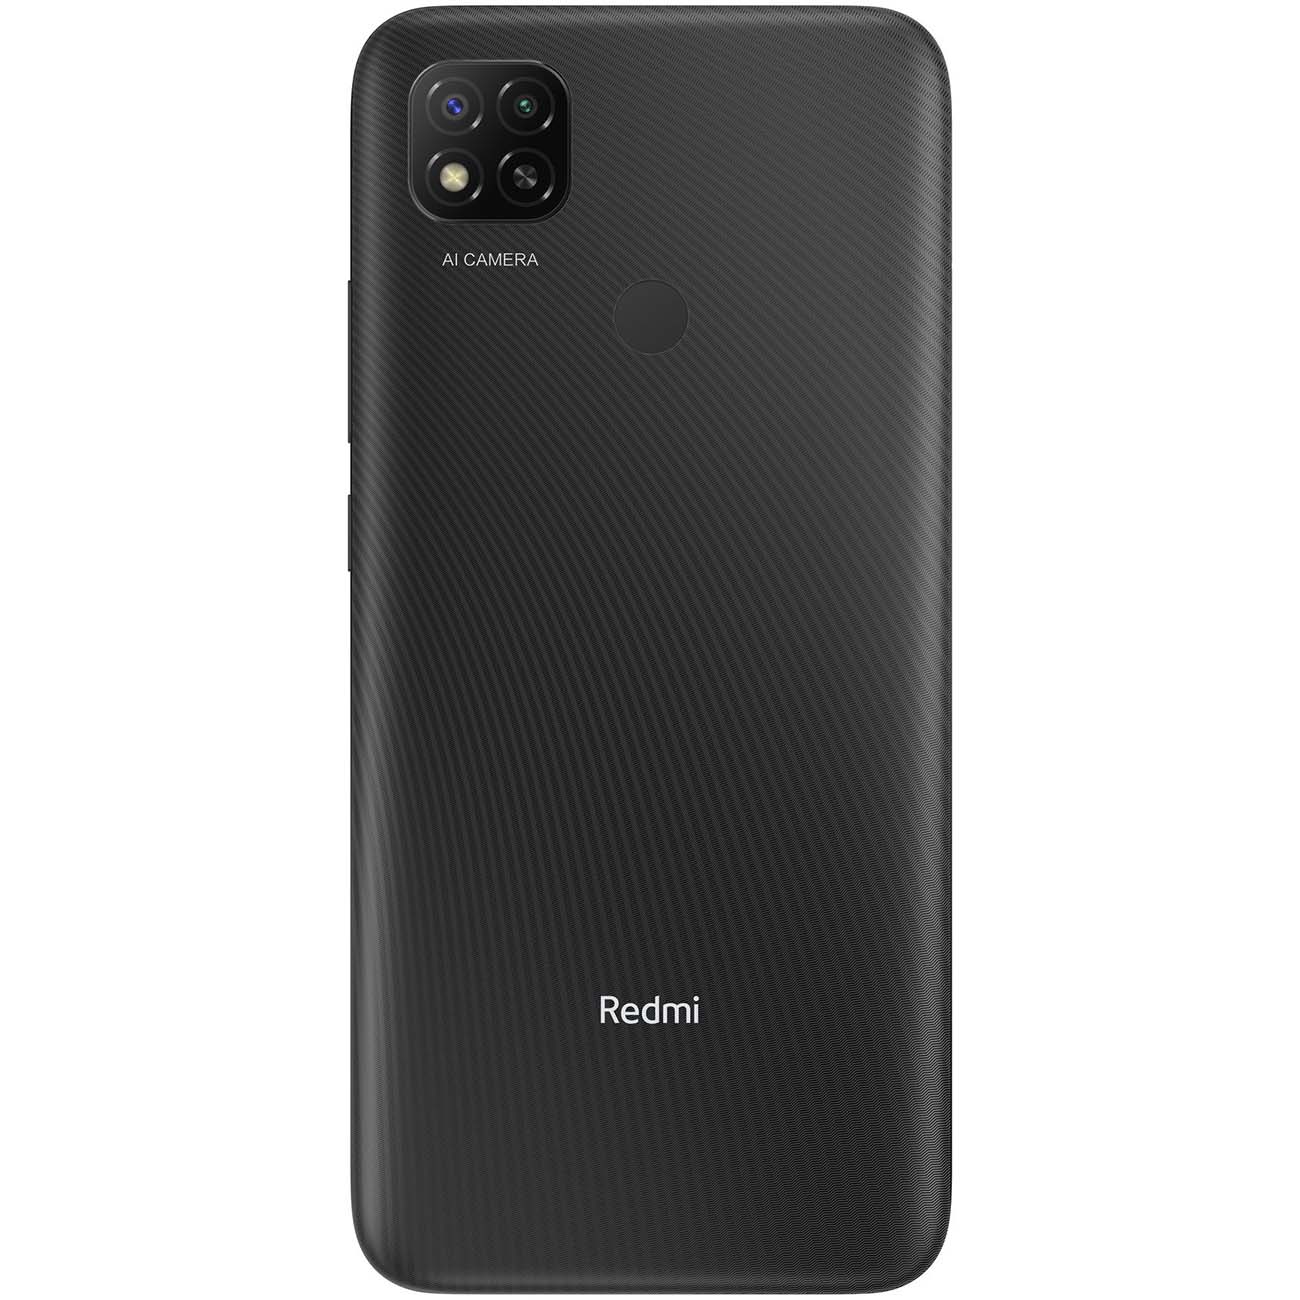 Купить смартфон xiaomi redmi 9c 4+128gb gray Смартфоны в официальном магазине Apple, Samsung, Xiaomi. iPixel.ru Купить, заказ, кредит, рассрочка, отзывы,  характеристики, цена,  фотографии, в подарок.